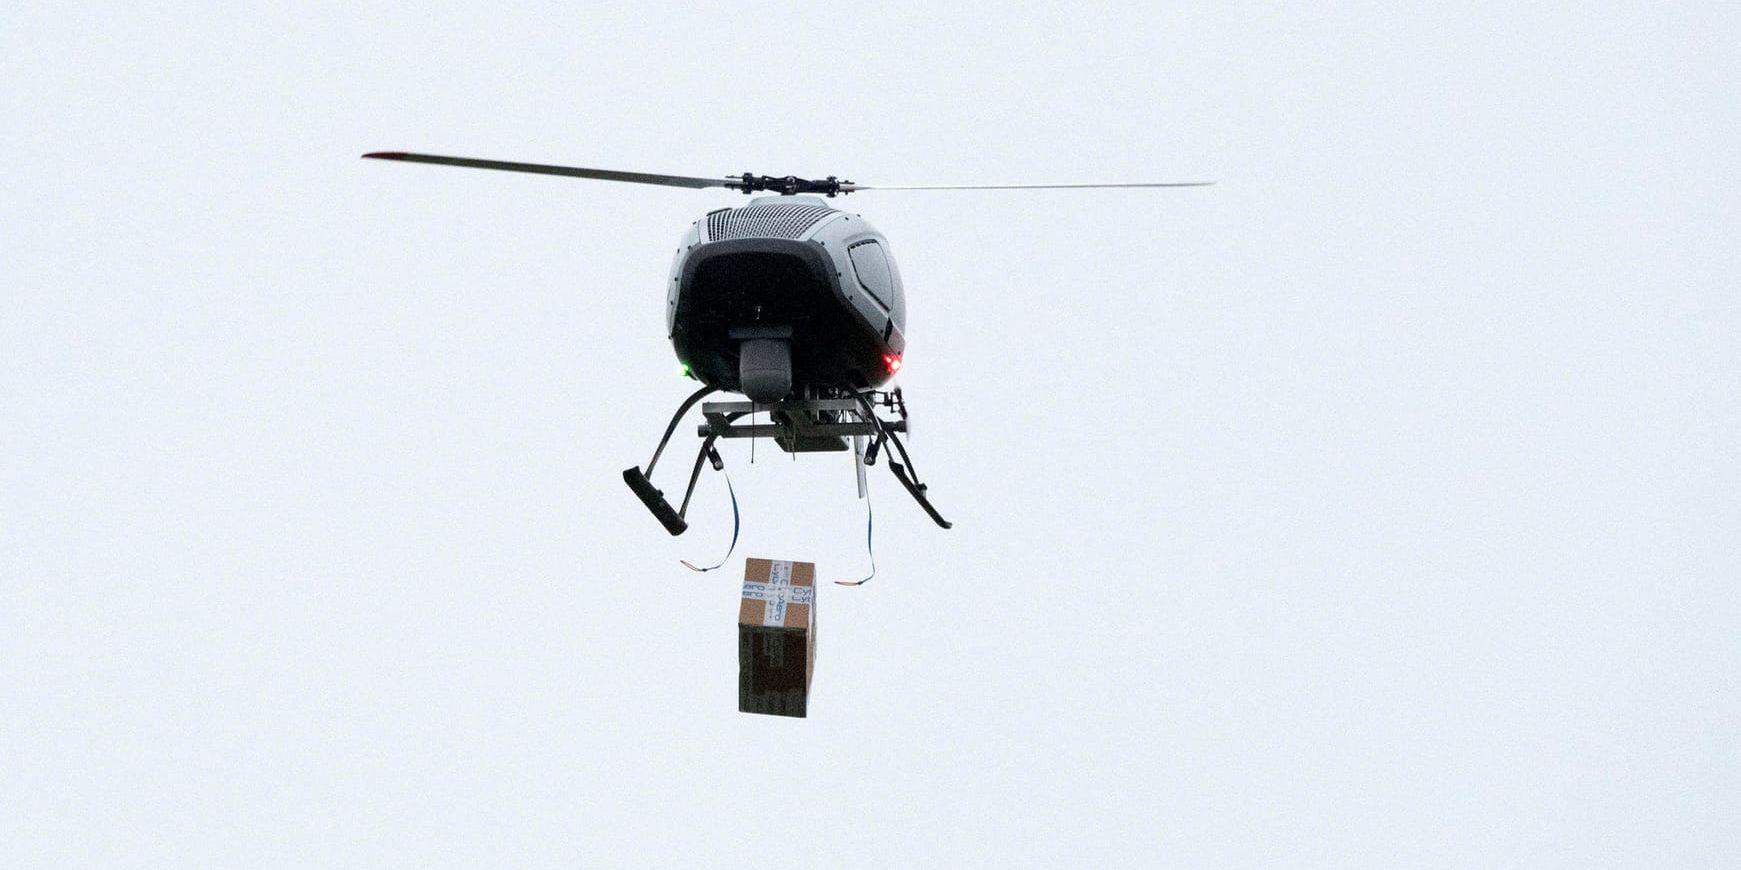 En drönare får företaget Cybaero genomför ett test och släpper två paket från luften under en praktikdag på drönarutbildningen på Ljungbyheds flygplats.